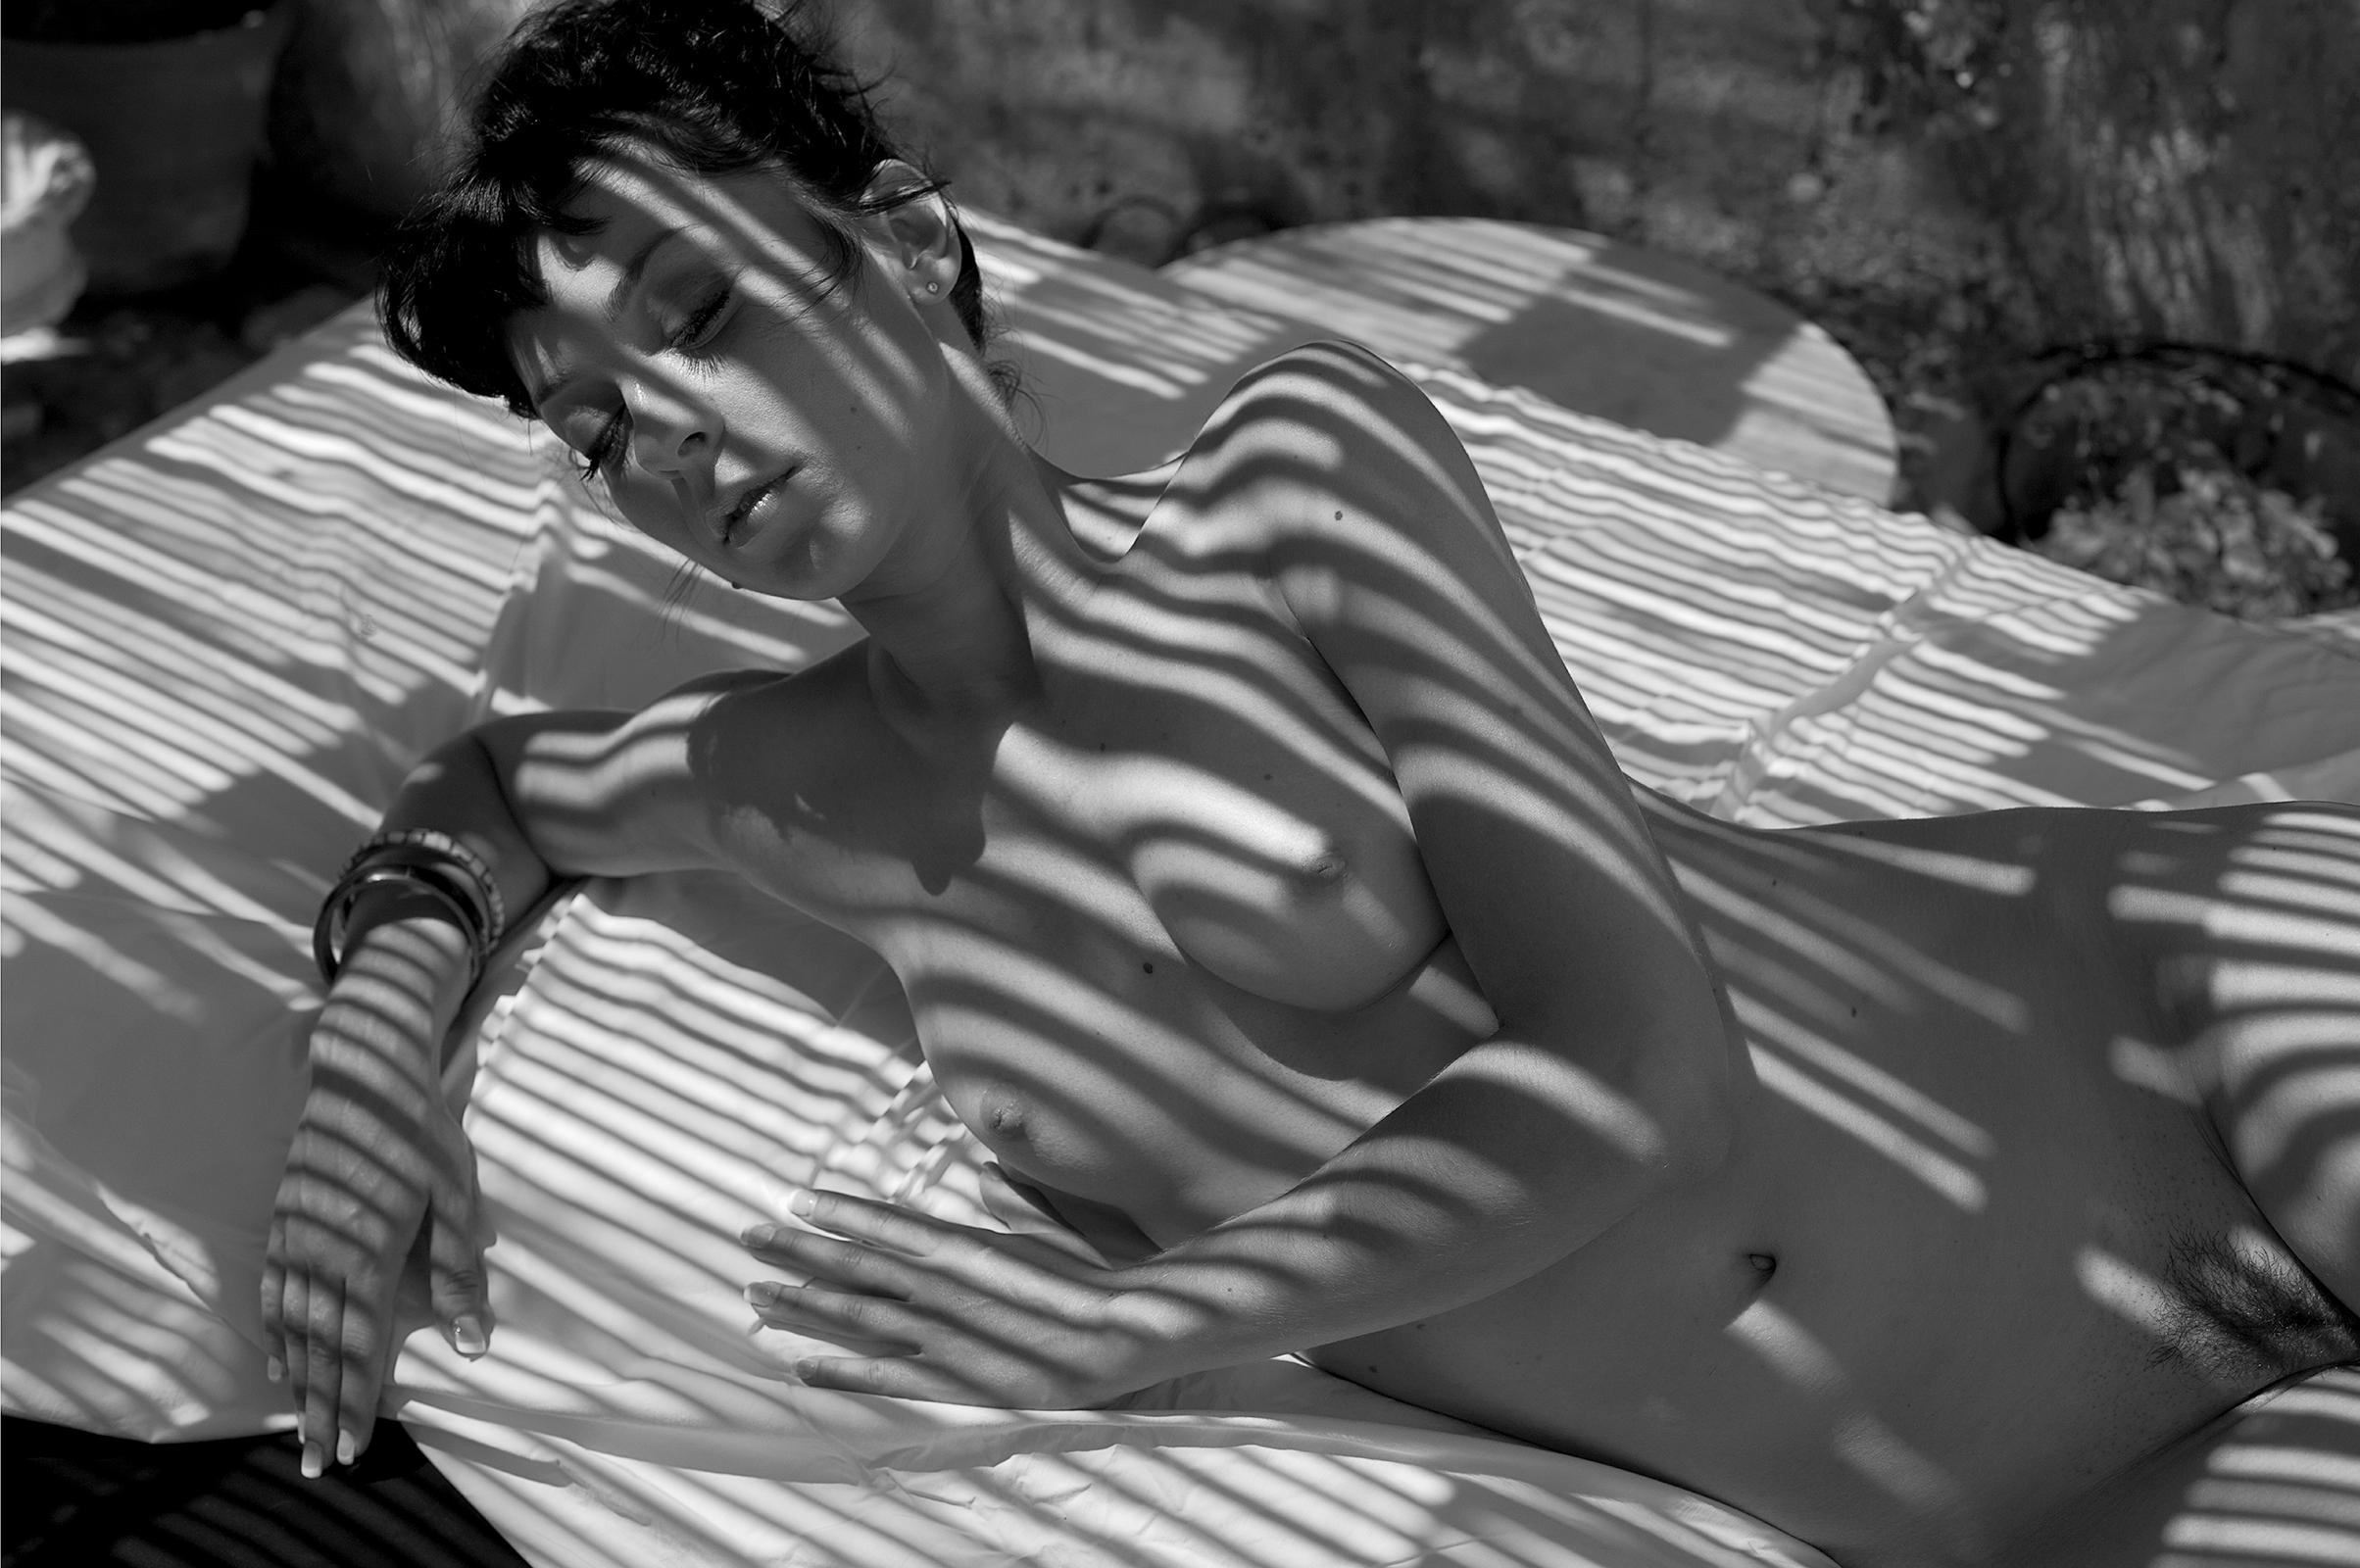 Nude Photograph Ian Sanderson - Karina- Impression contemporaine en édition limitée, photo en noir et blanc, femme nue